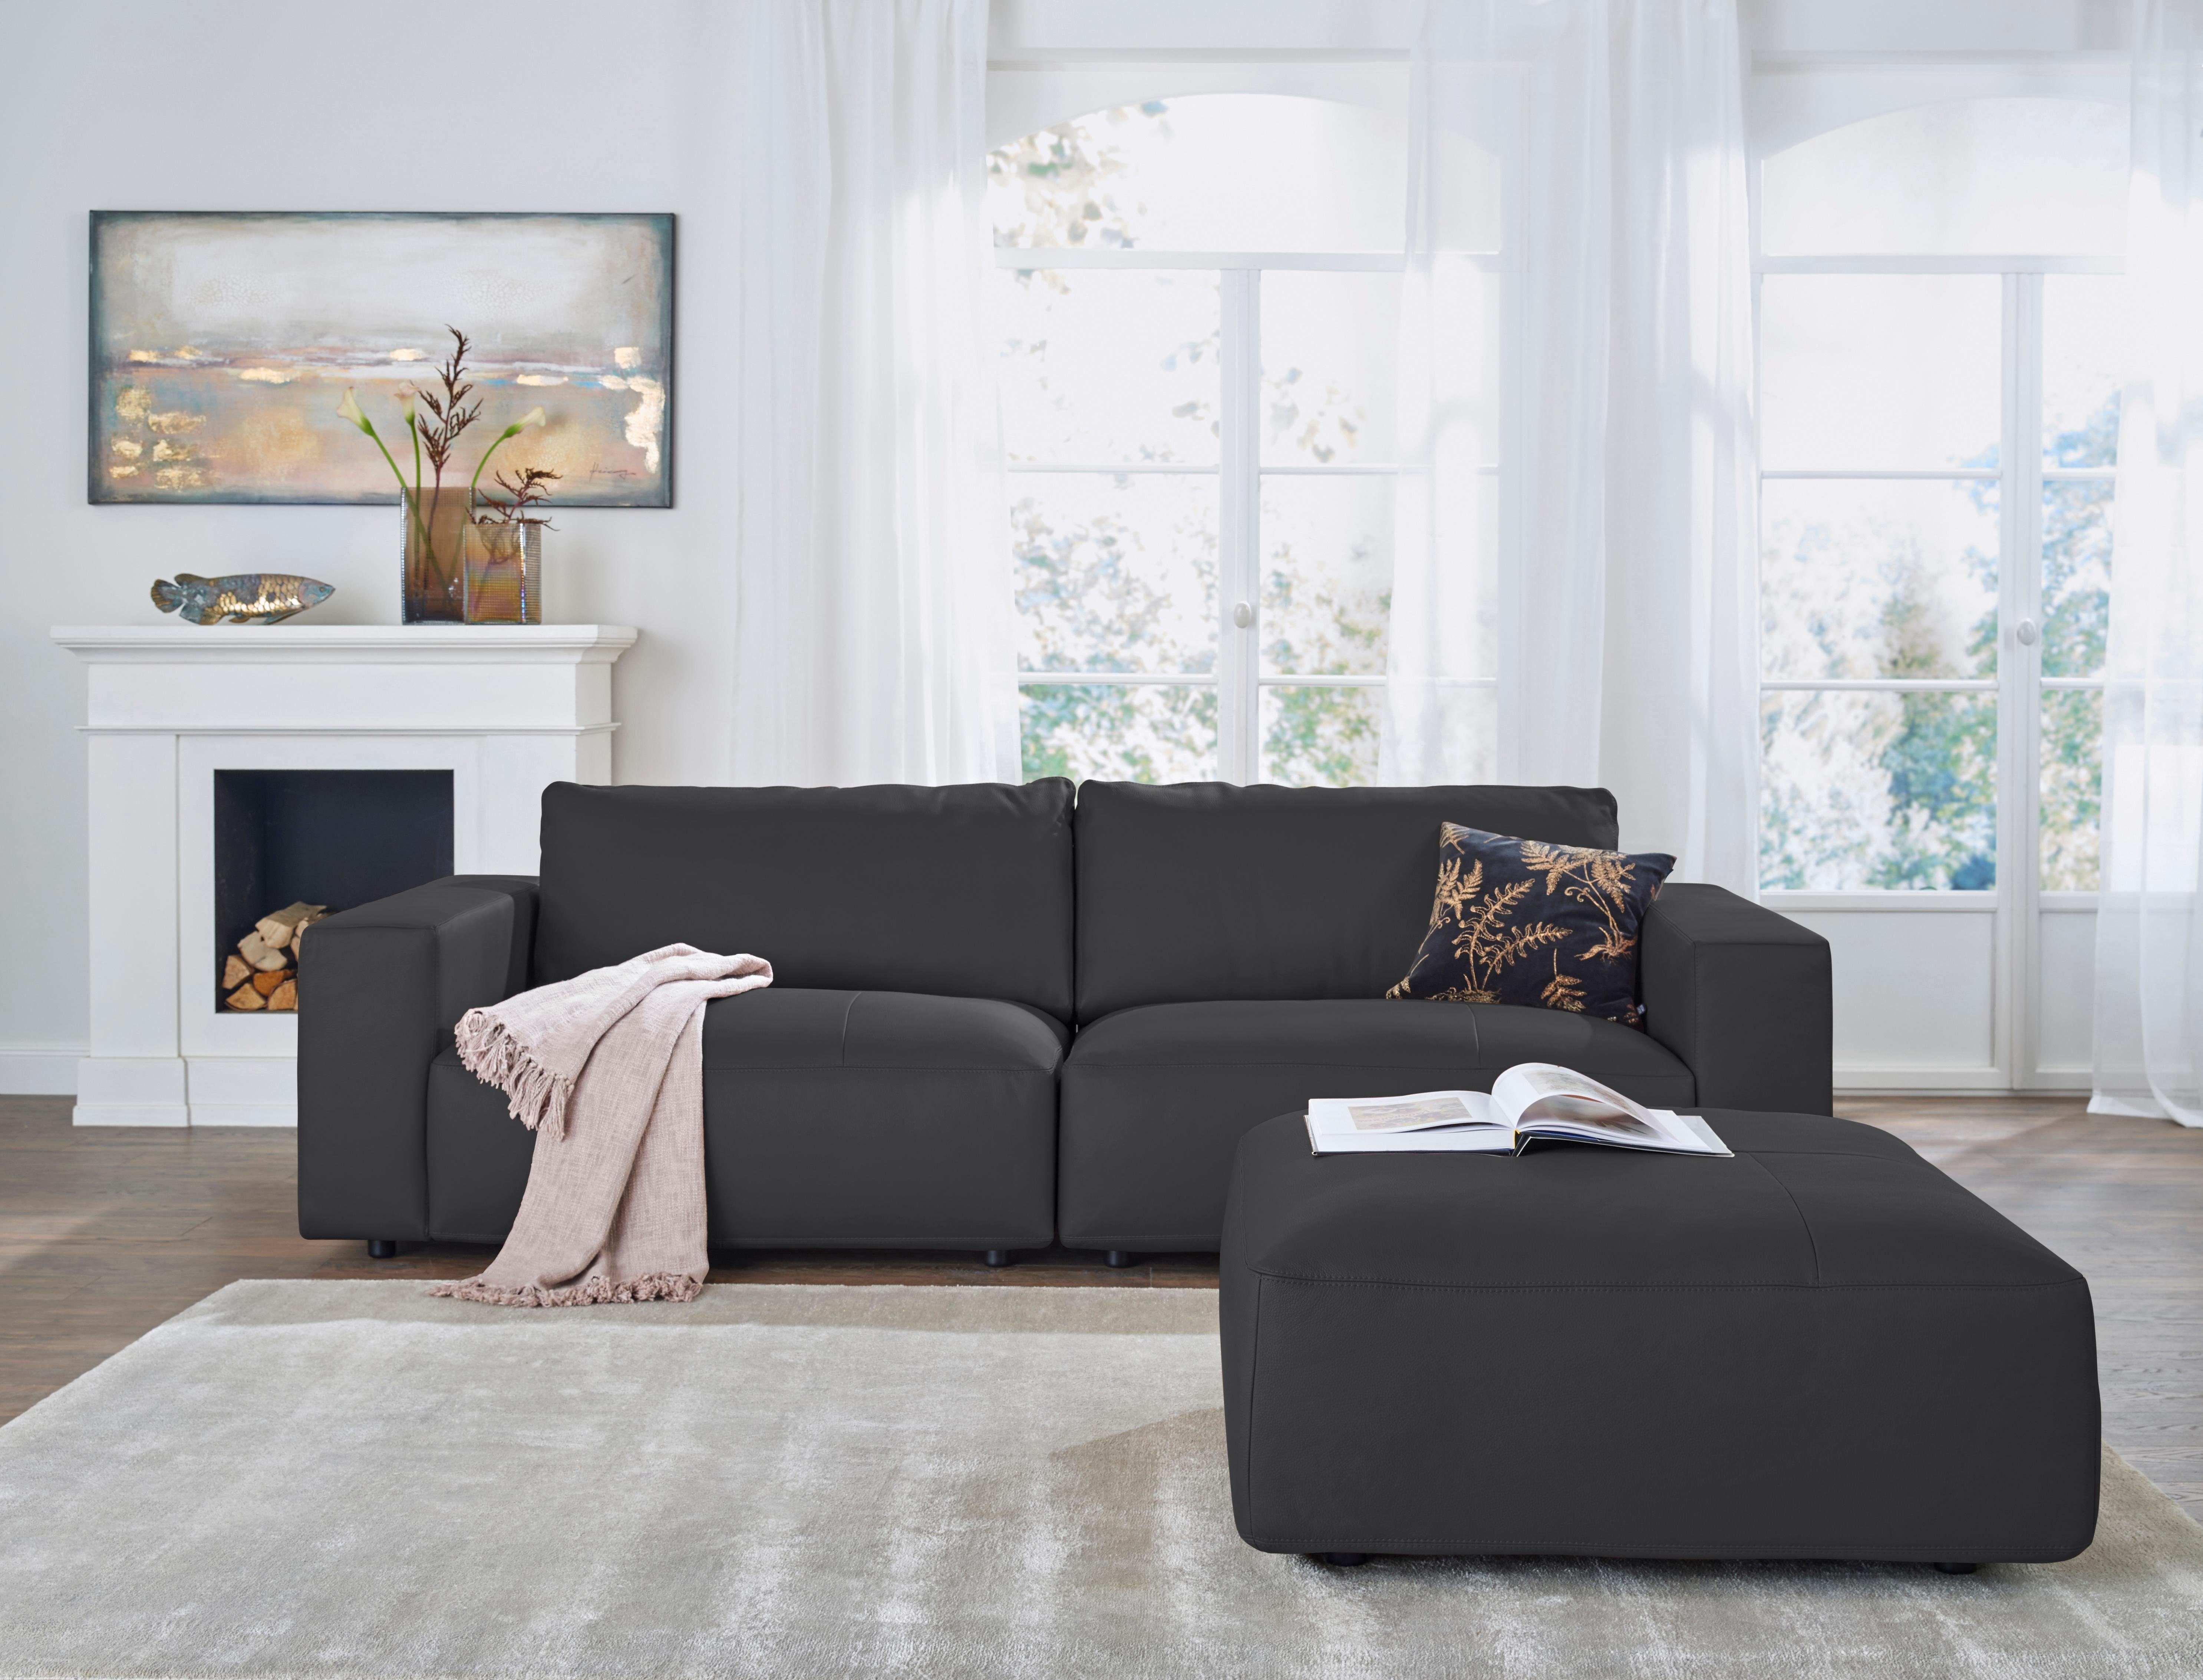 LUCIA, by und M GALLERY branded Big-Sofa Nähten, 4 Musterring 3-Sitzer Qualitäten in vielen unterschiedlichen